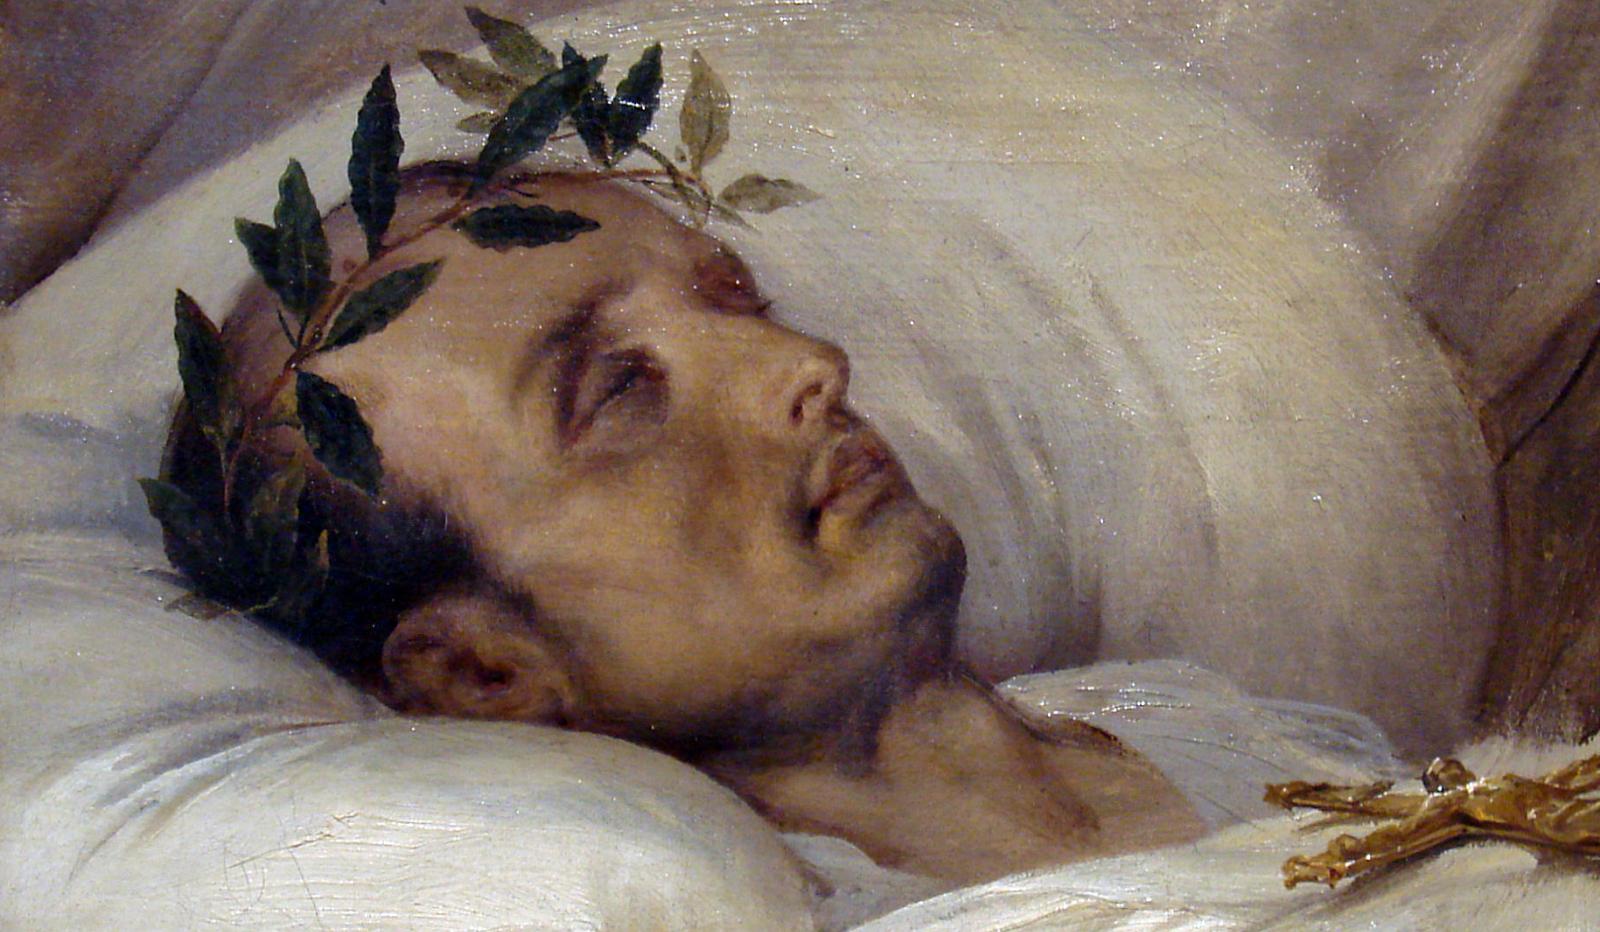 Наполеон на смертном одре. О. Верне, 1826 год.